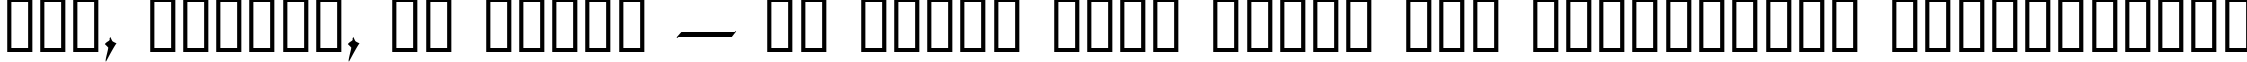 Пример написания шрифтом Coelnische Current Fraktur OsF текста на украинском